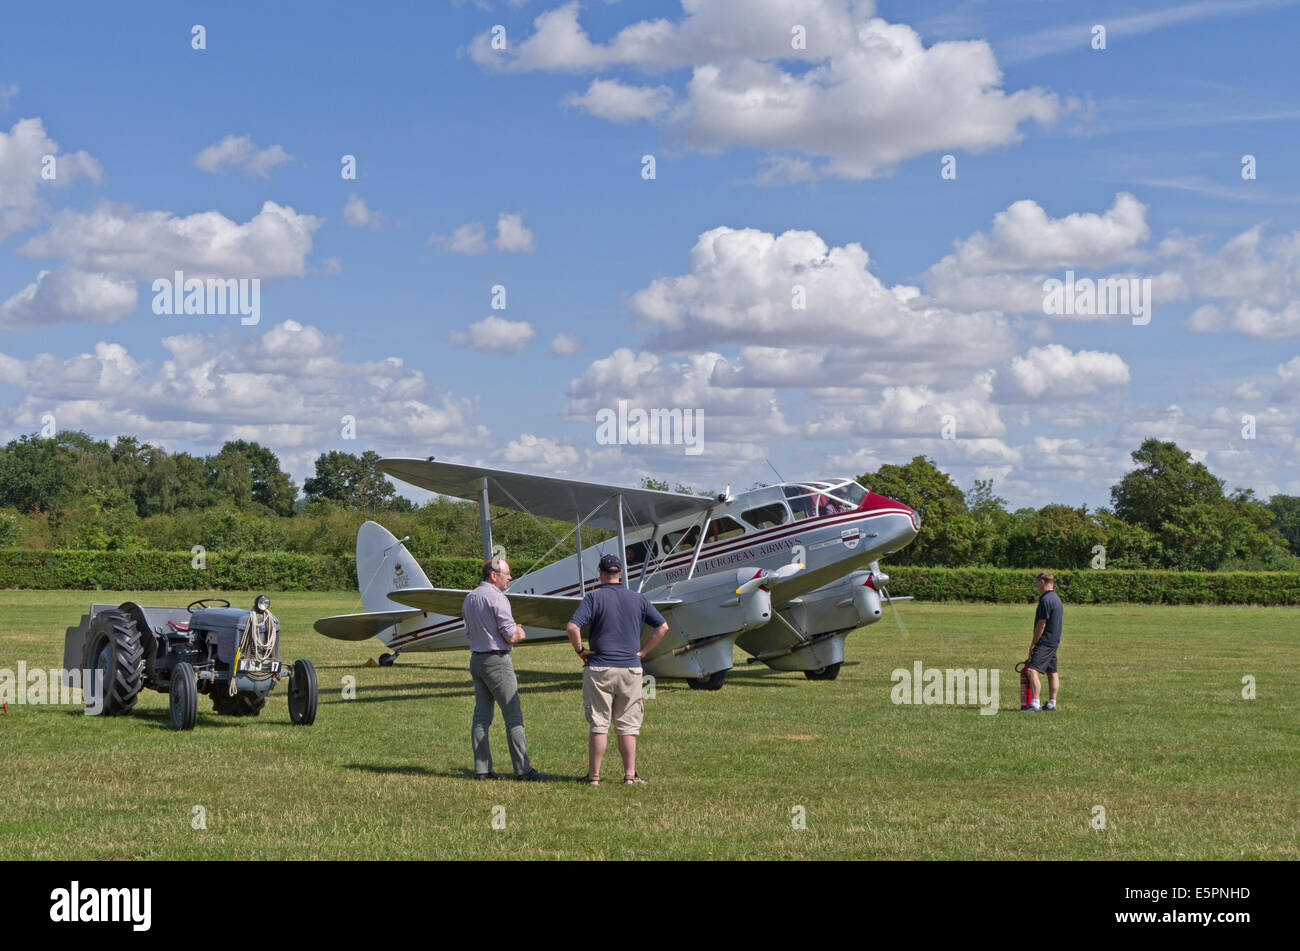 Una doppia elica aeromobili leggeri in attesa di prendere il via a Shuttleworth Airfield, Bedfordshire; tre osservatori maschi in attesa. Foto Stock